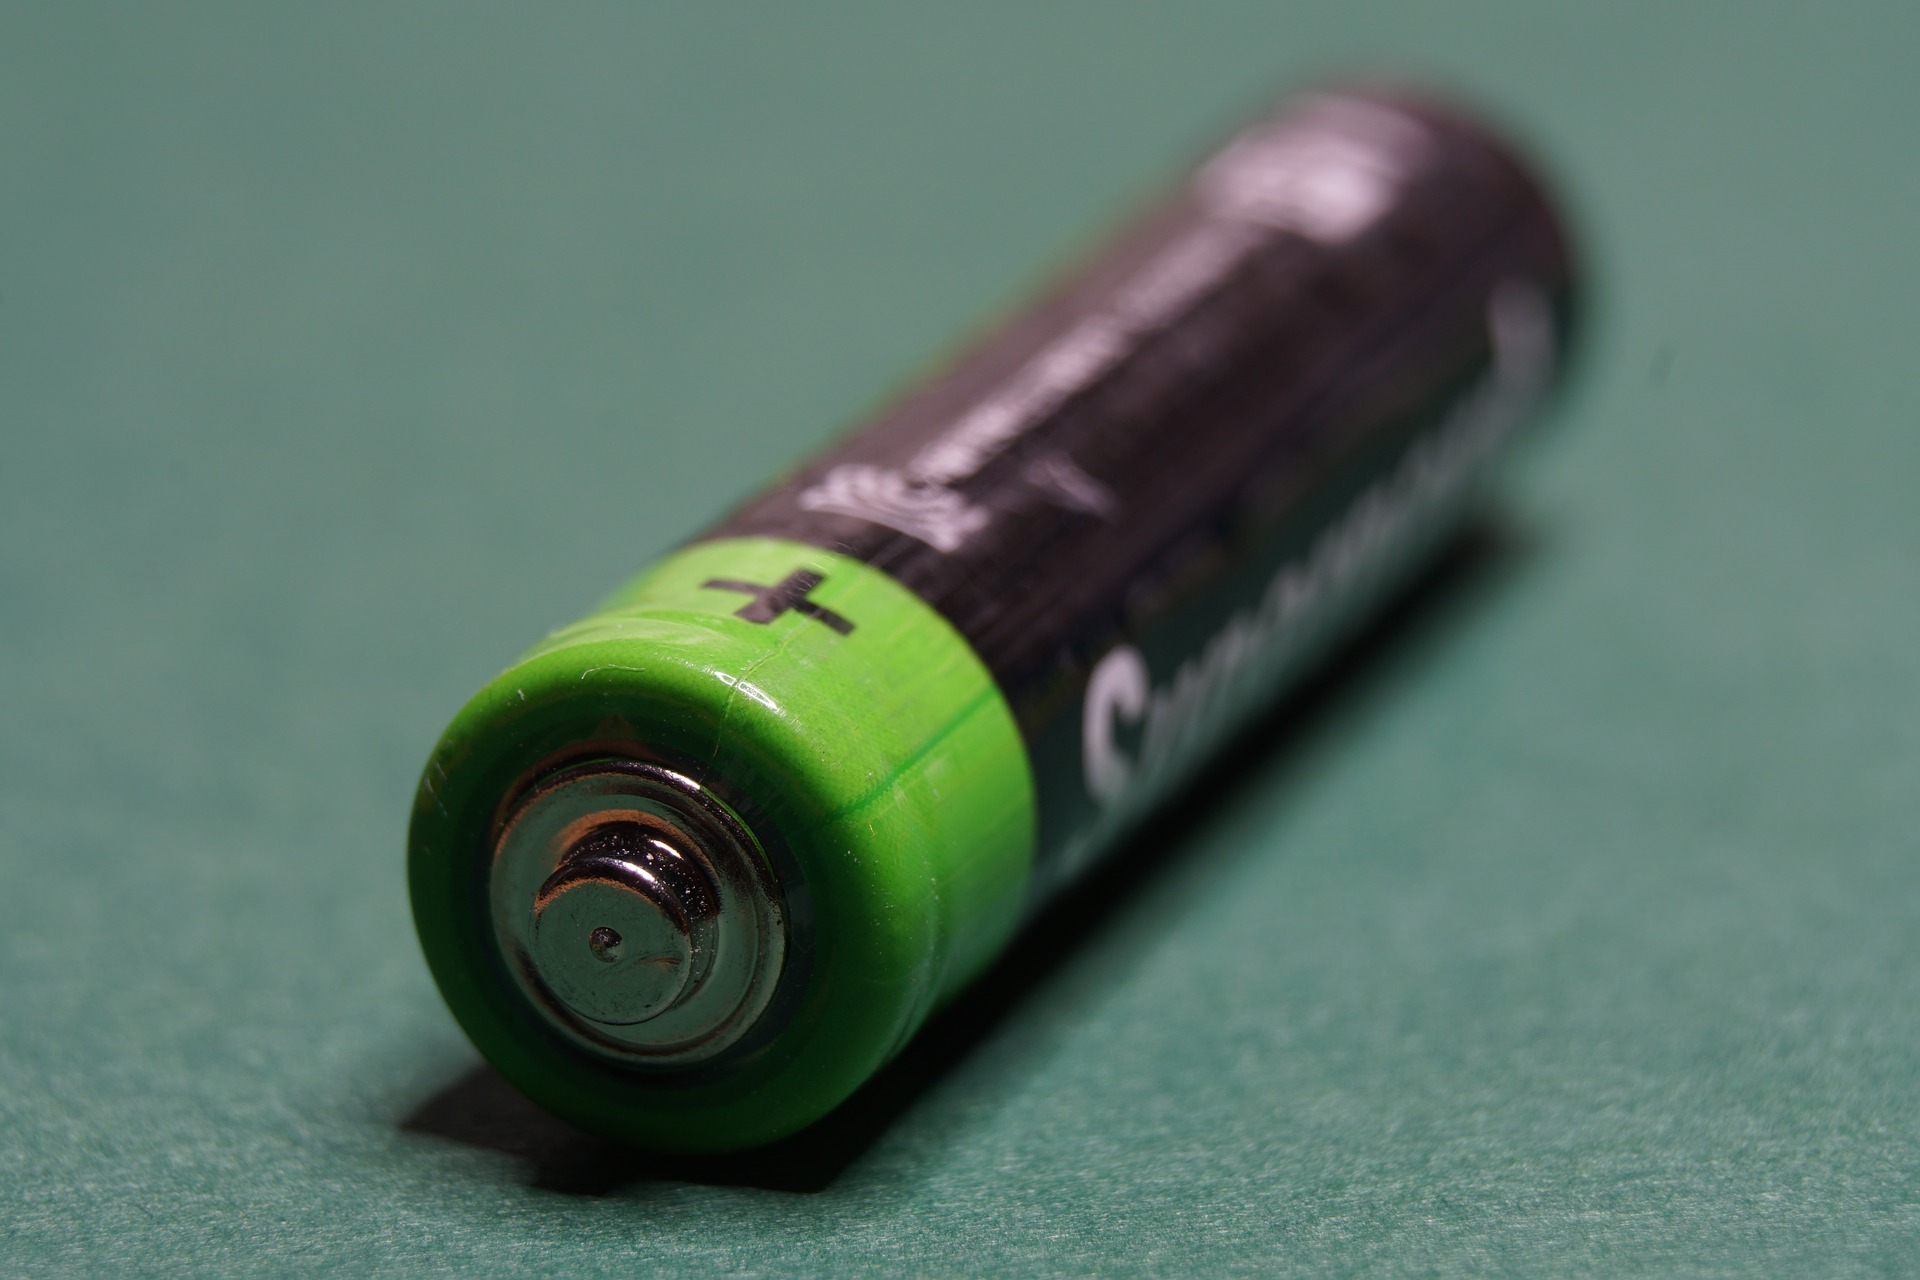 «Мегаполисресурс» бесплатно вывезет на утилизацию батарейки из школ